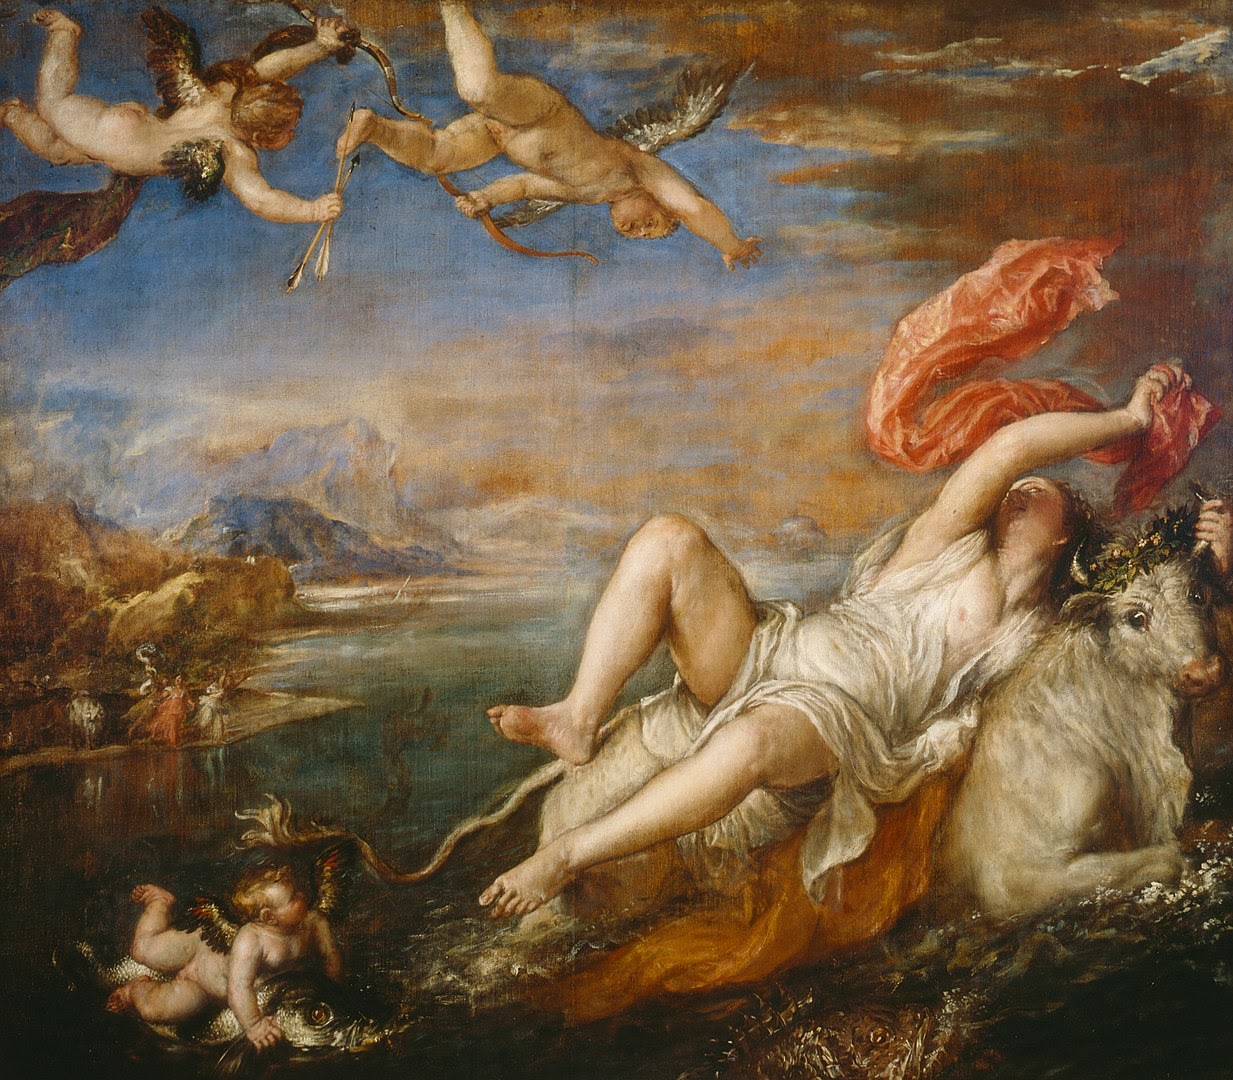 Re-Metamorphoses: The Misogynistic Legacy of Western Mythology